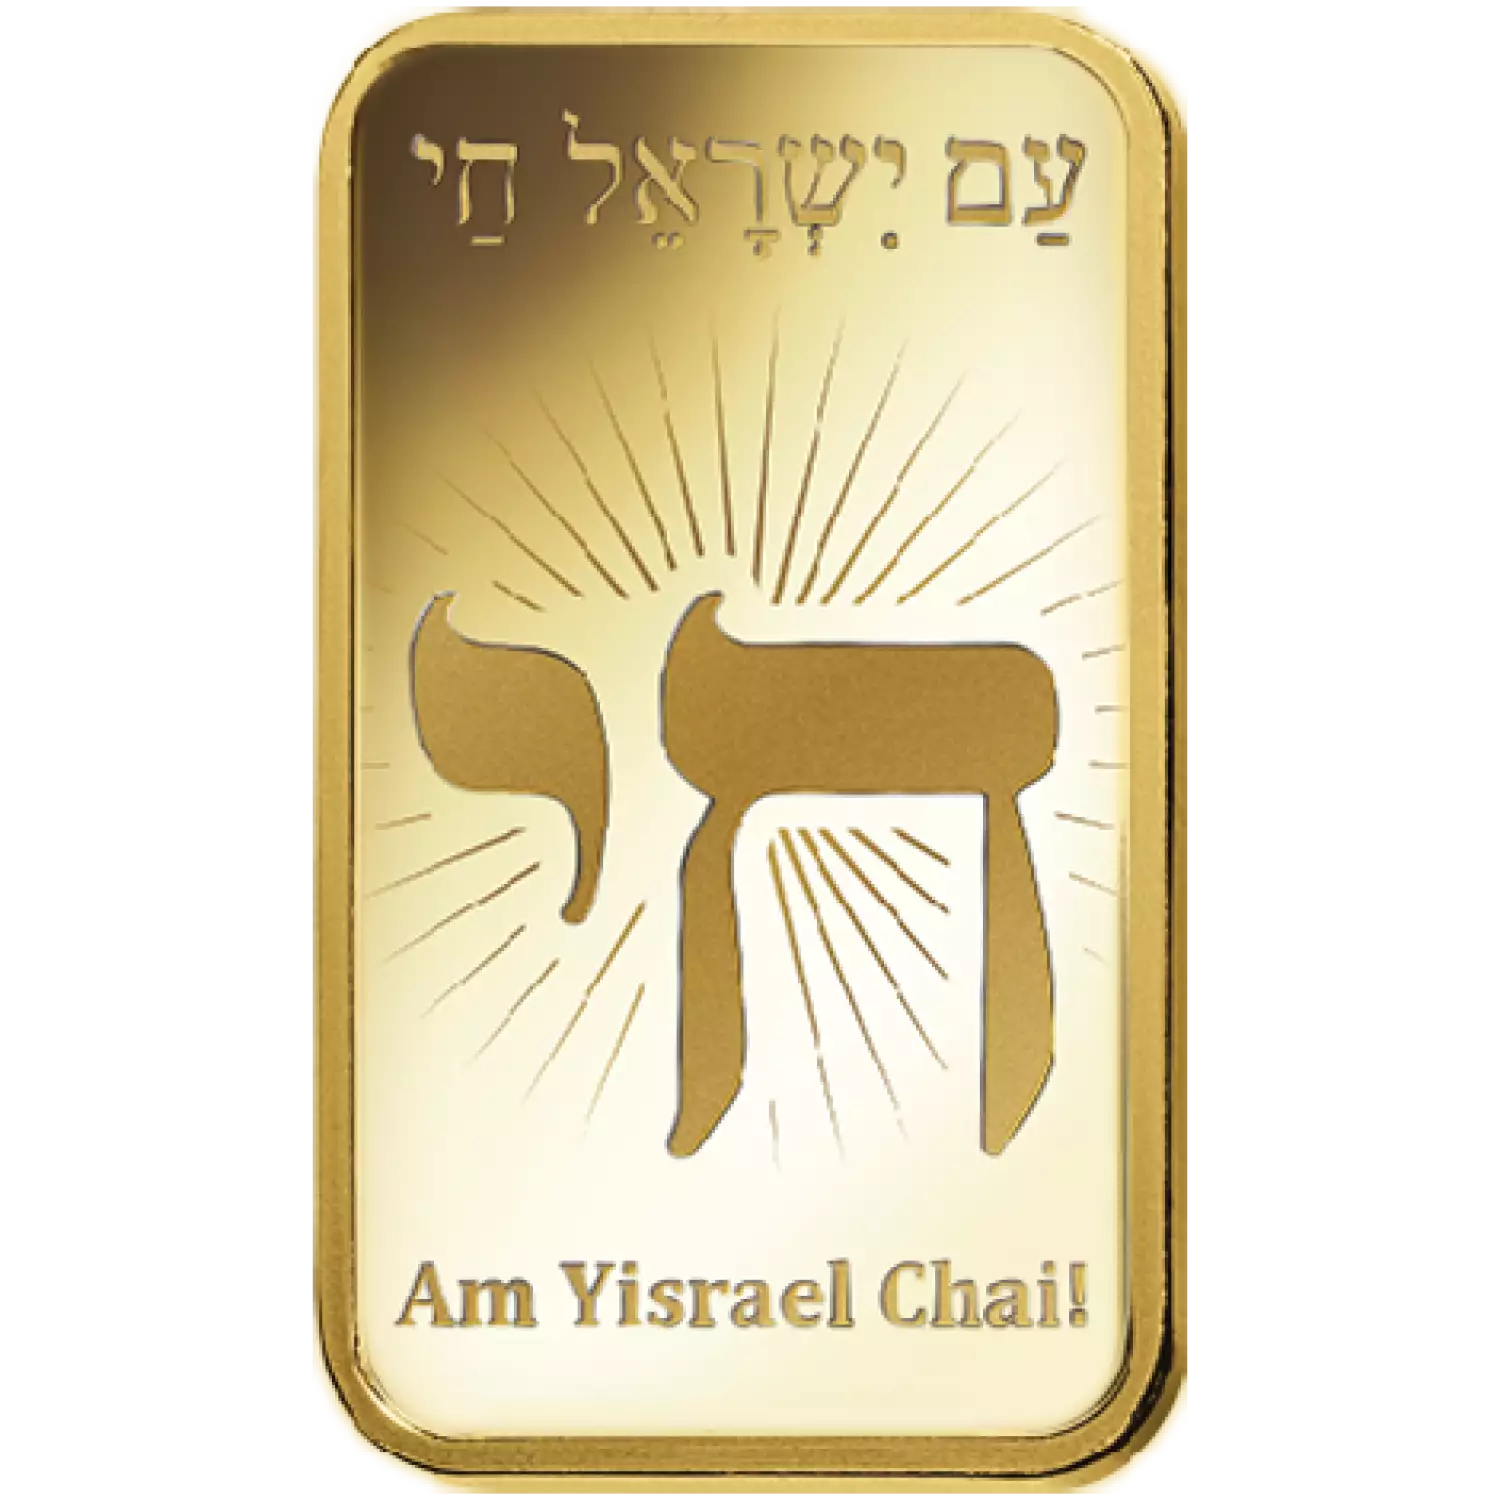 1oz PAMP Gold Bar - Am Yisrael Chai!